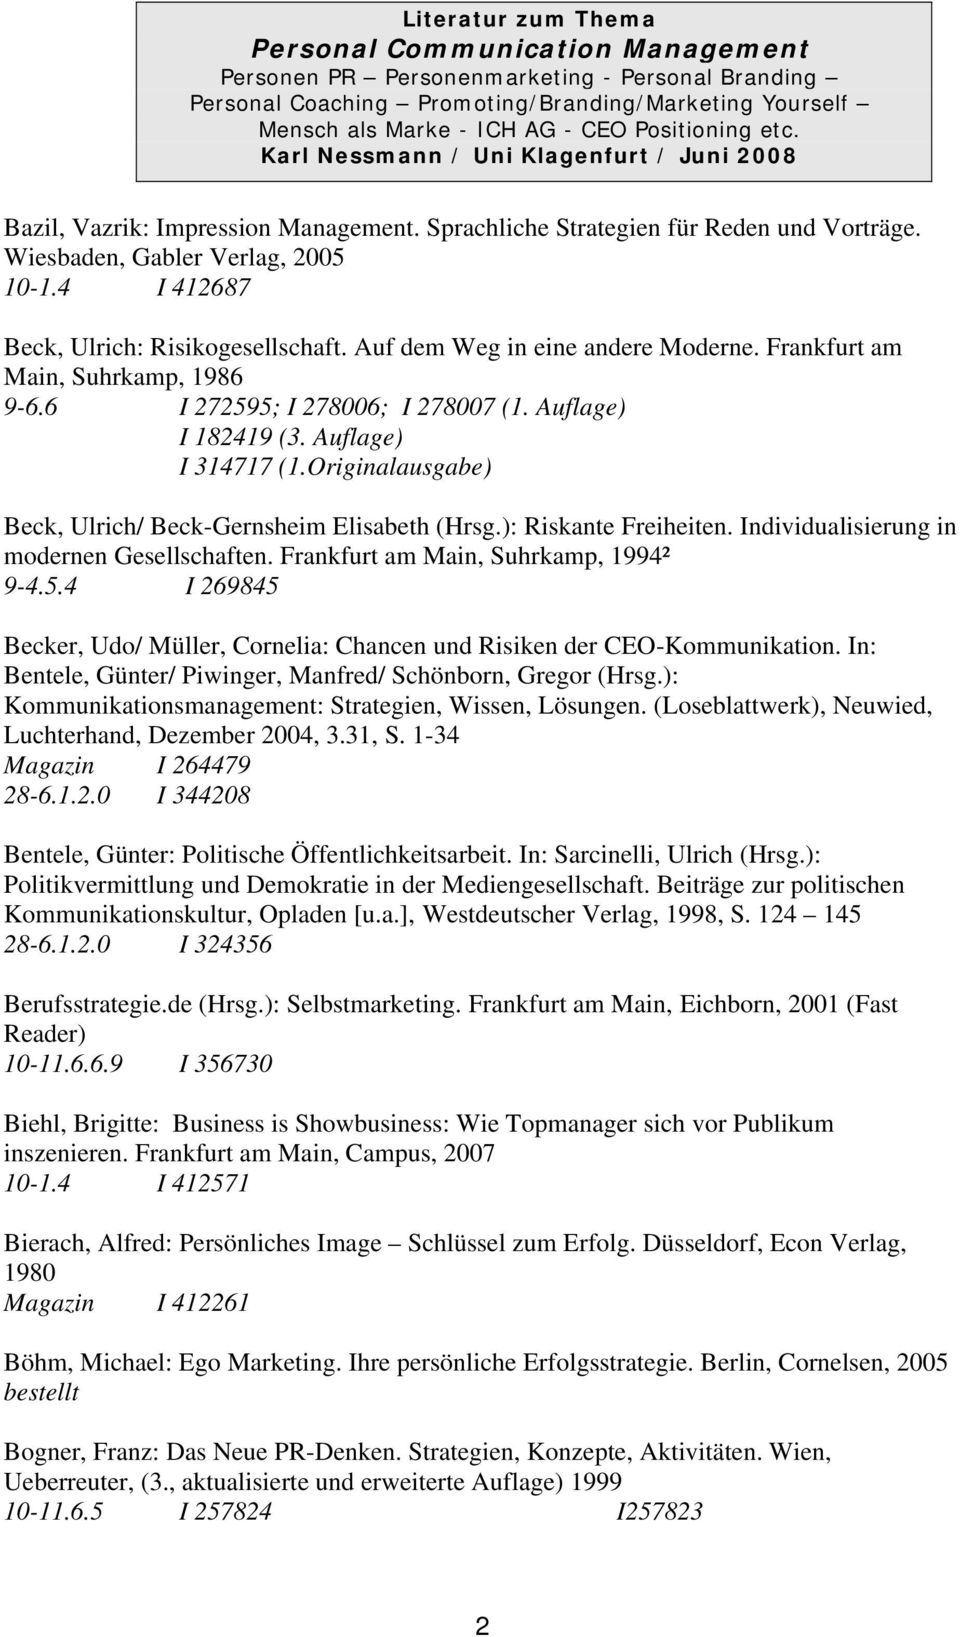 Originalausgabe) Beck, Ulrich/ Beck-Gernsheim Elisabeth (Hrsg.): Riskante Freiheiten. Individualisierung in modernen Gesellschaften. Frankfurt am Main, Suhrkamp, 1994² 9-4.5.